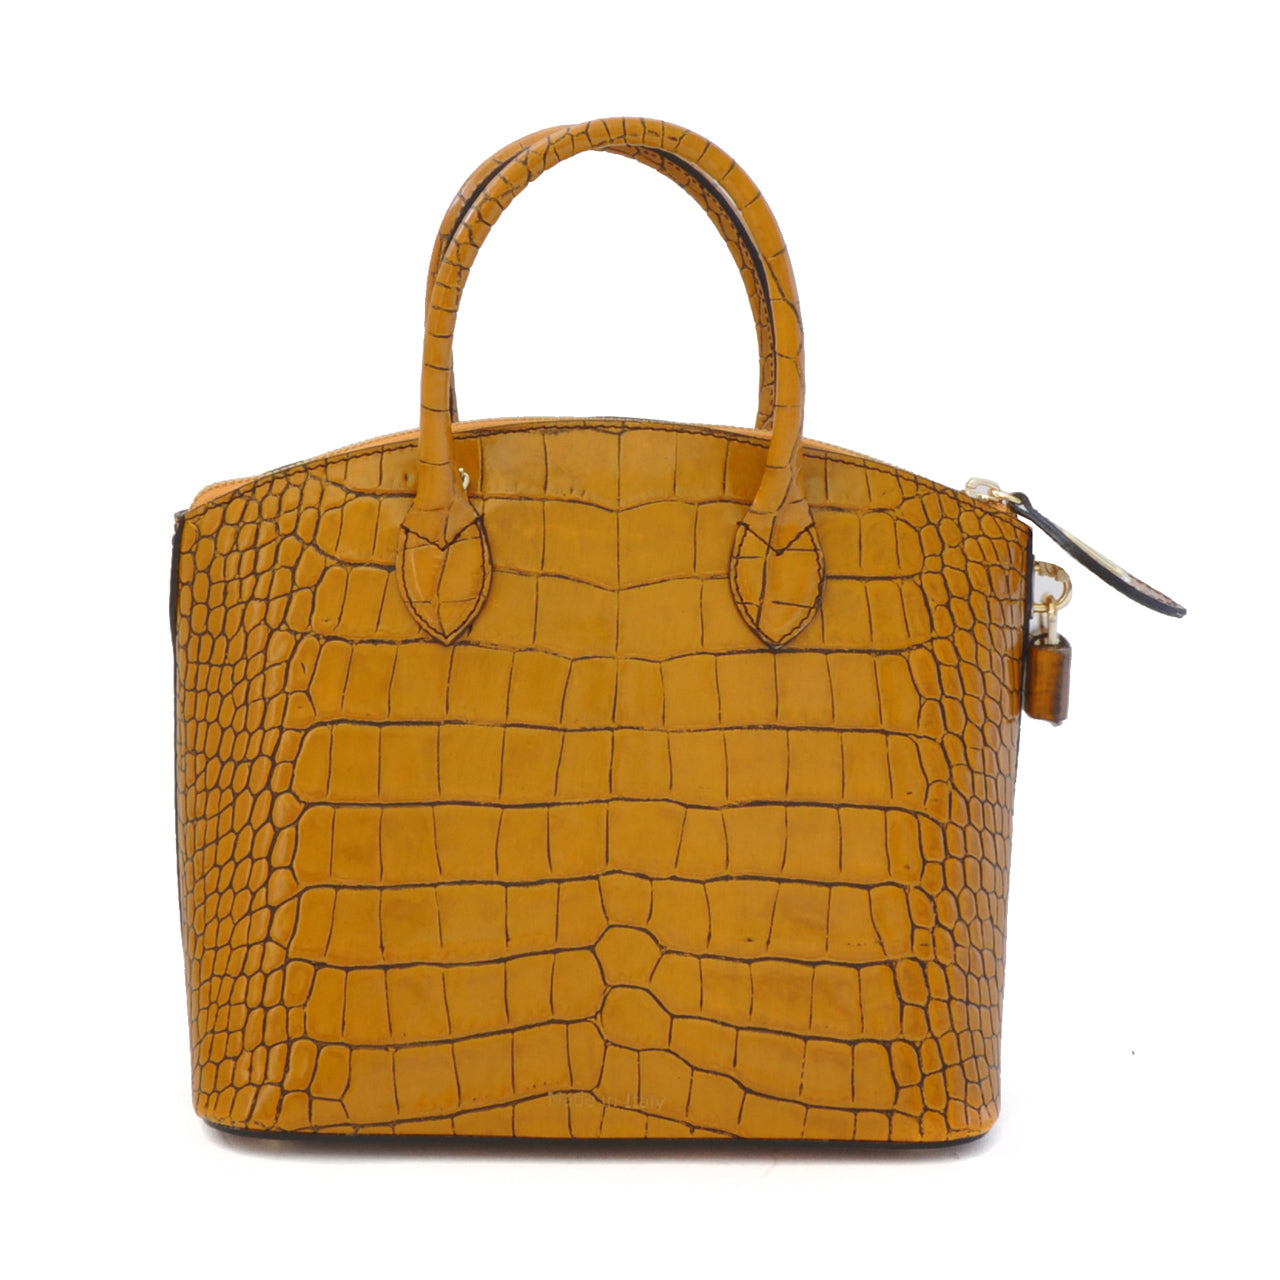 Pratesi Versilia King Small Woman Bag in genuine Italian leather